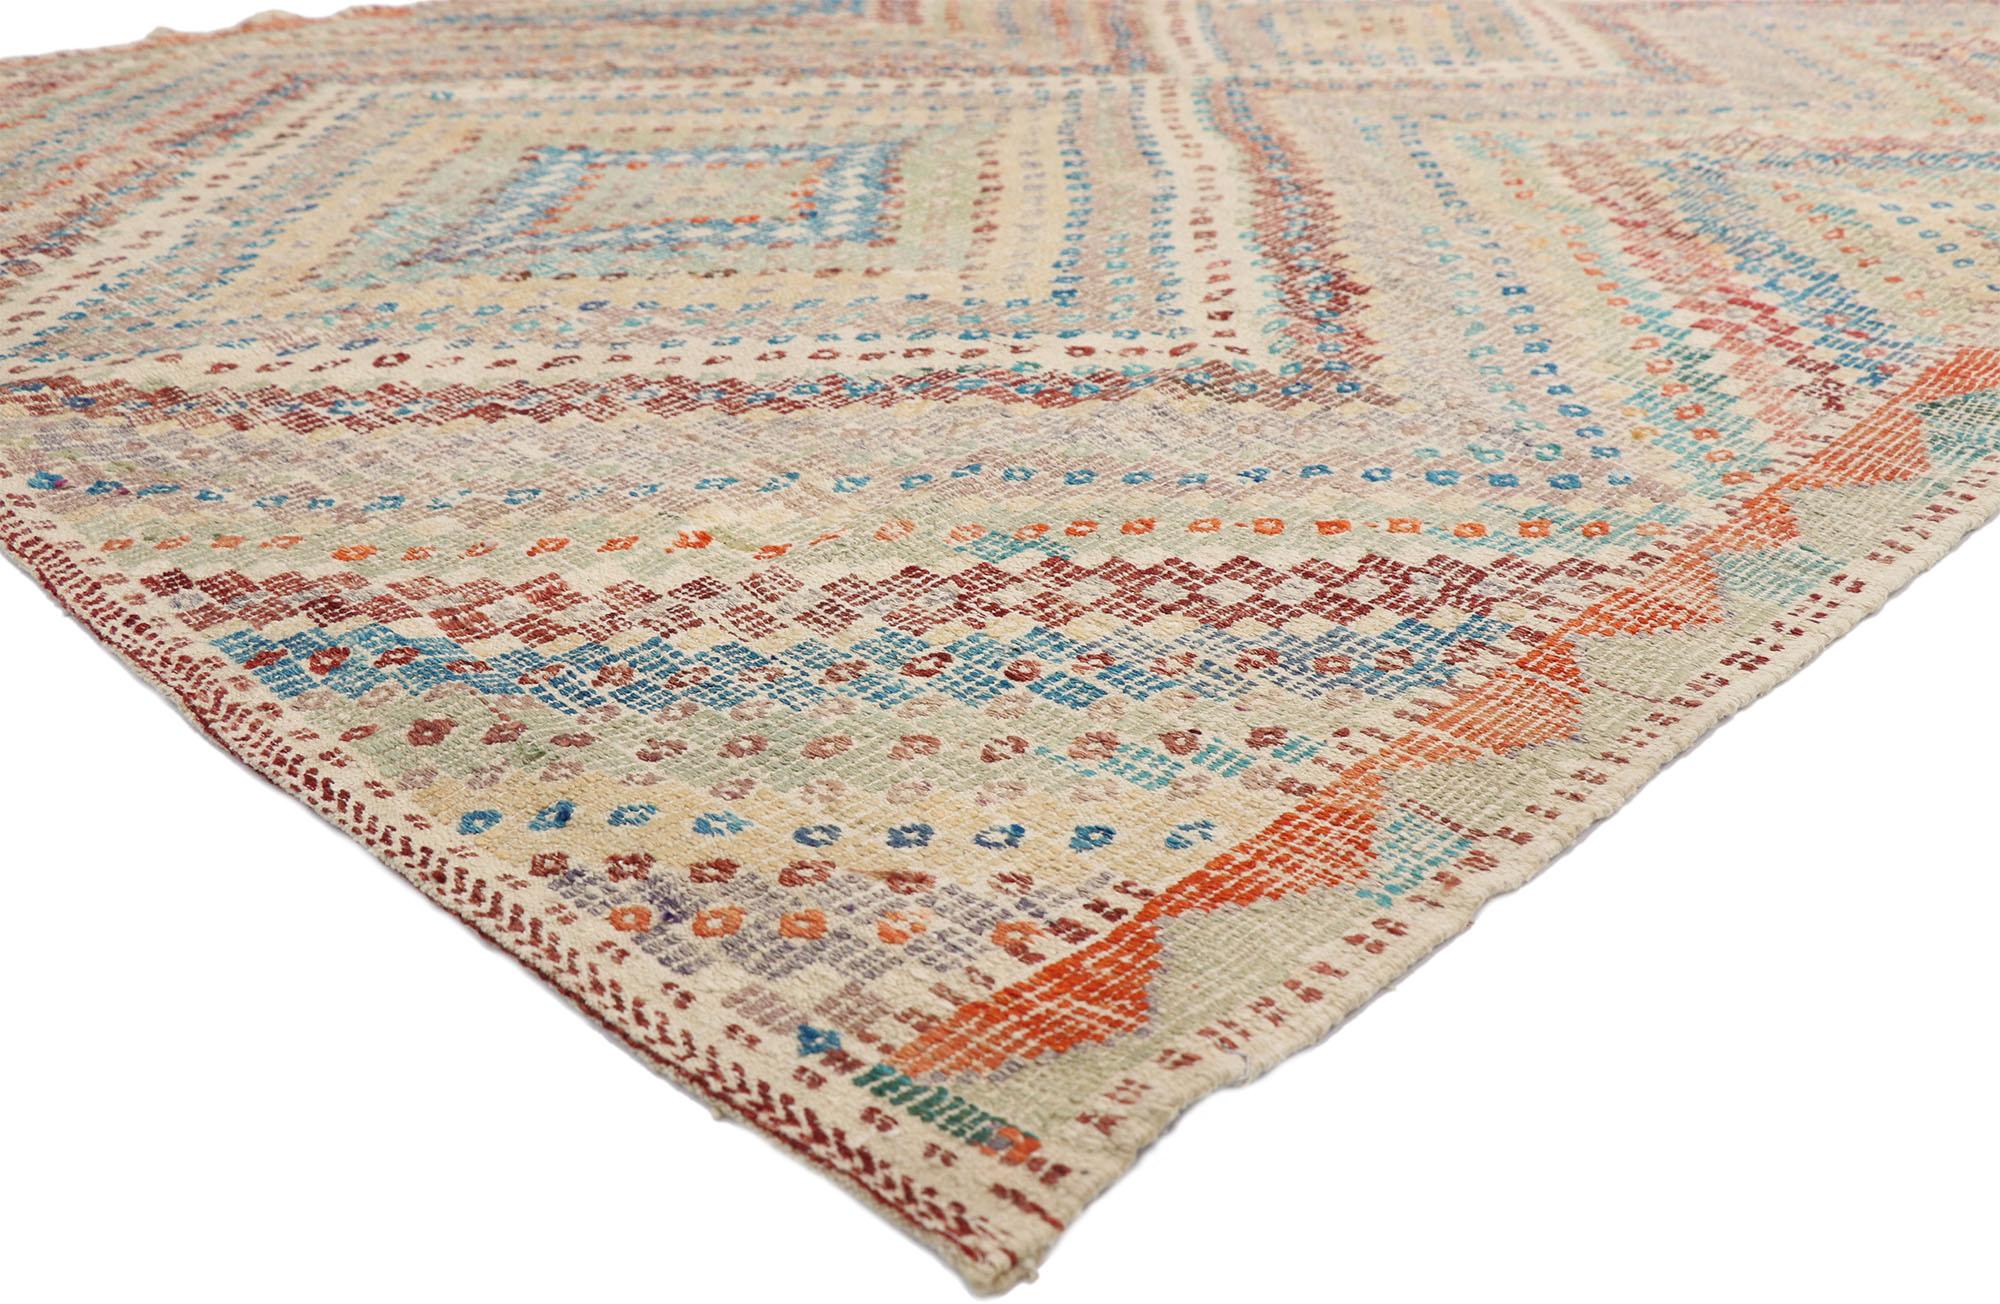 52556, tapis Kilim turc vintage en mauvais état avec le style colonial britannique de Southern Living. Ce tapis Kilim turc vintage en laine tissé à la main présente un losange central entouré de bandes rayées supplémentaires créant un effet